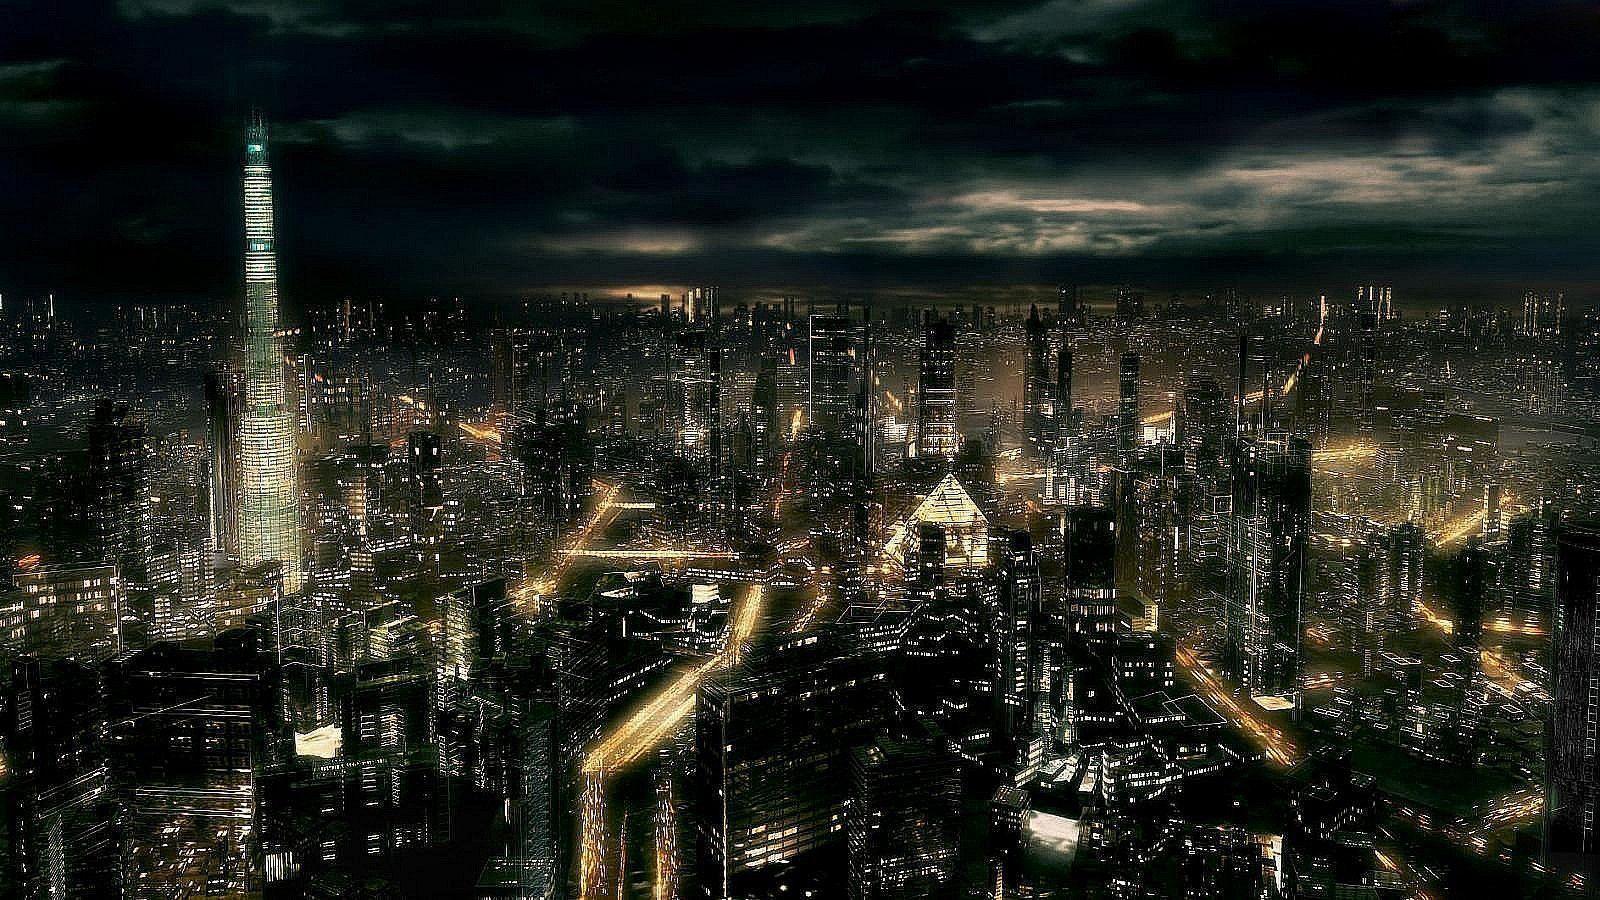 Dark City At Night Full HD Wallpaper 1600x900PX Wallpaper HD